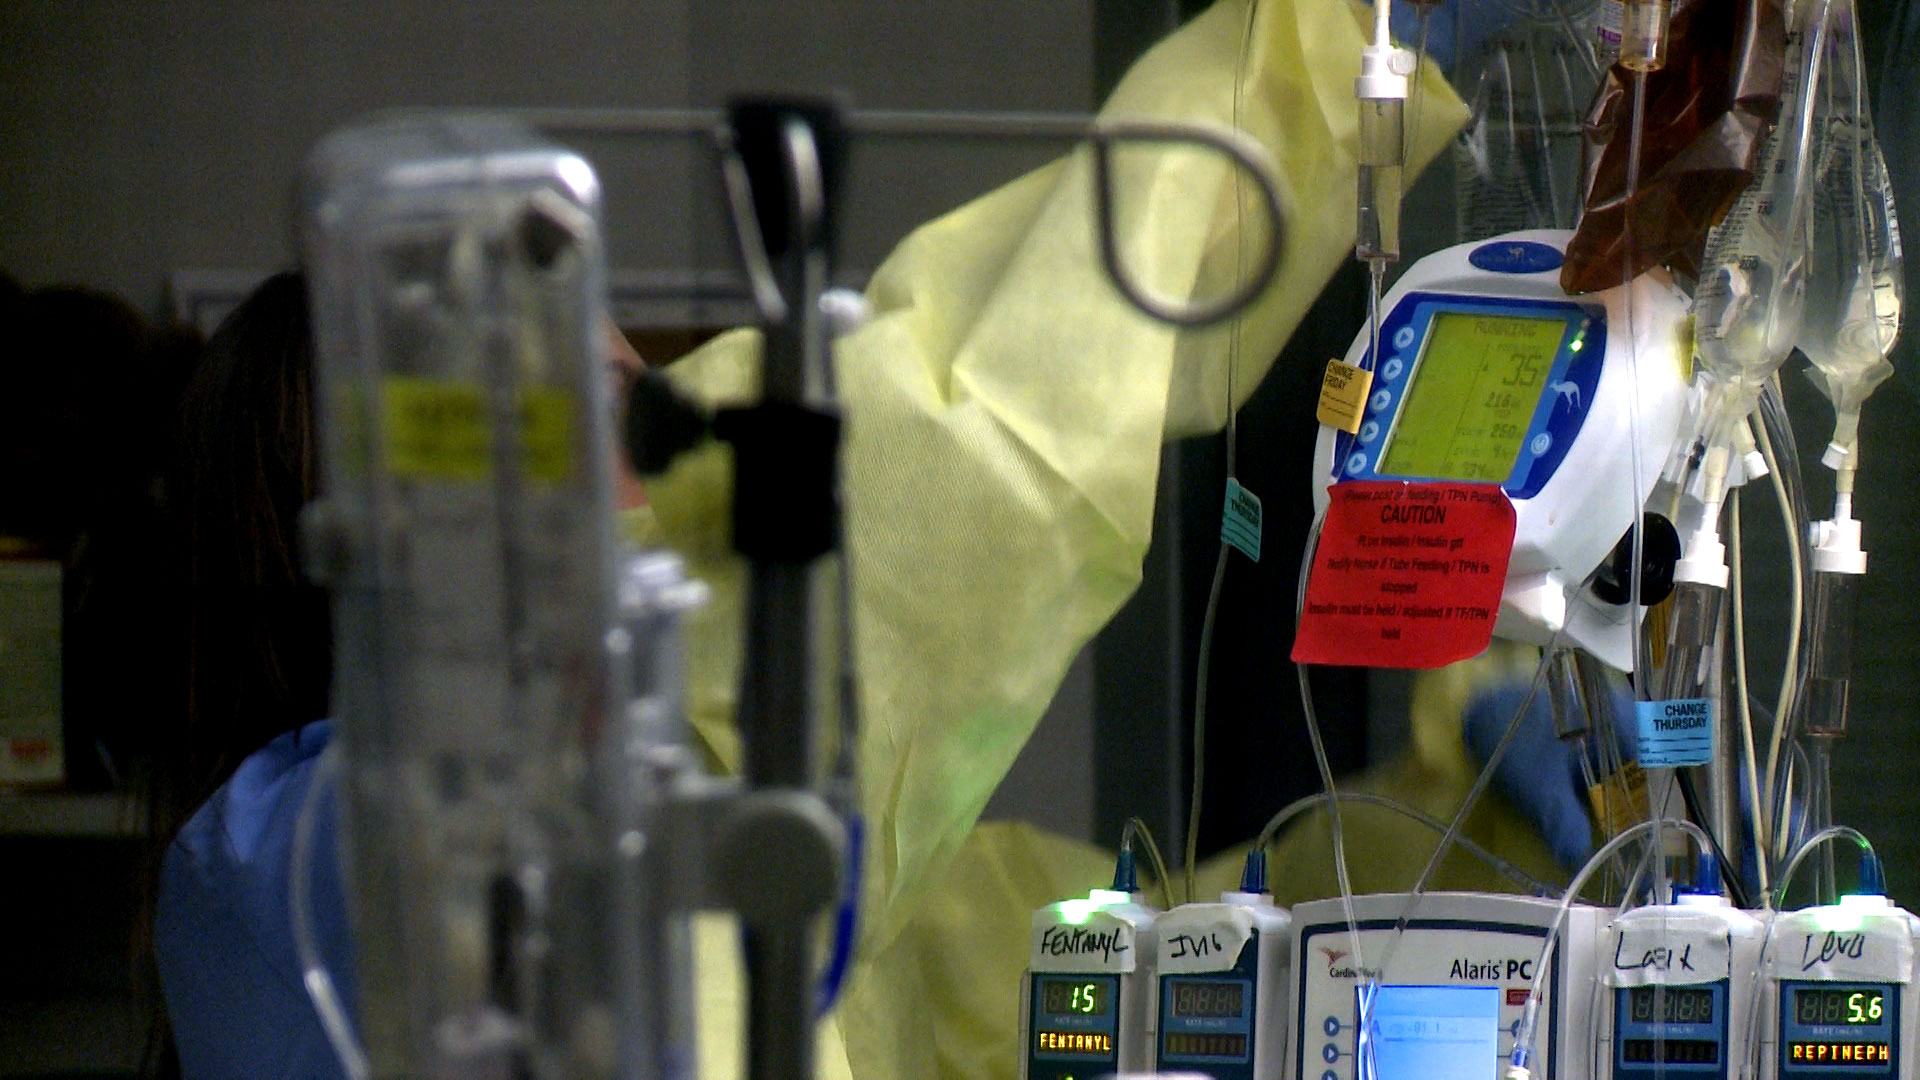 File image of a health care worker adjusting an IV bag. 